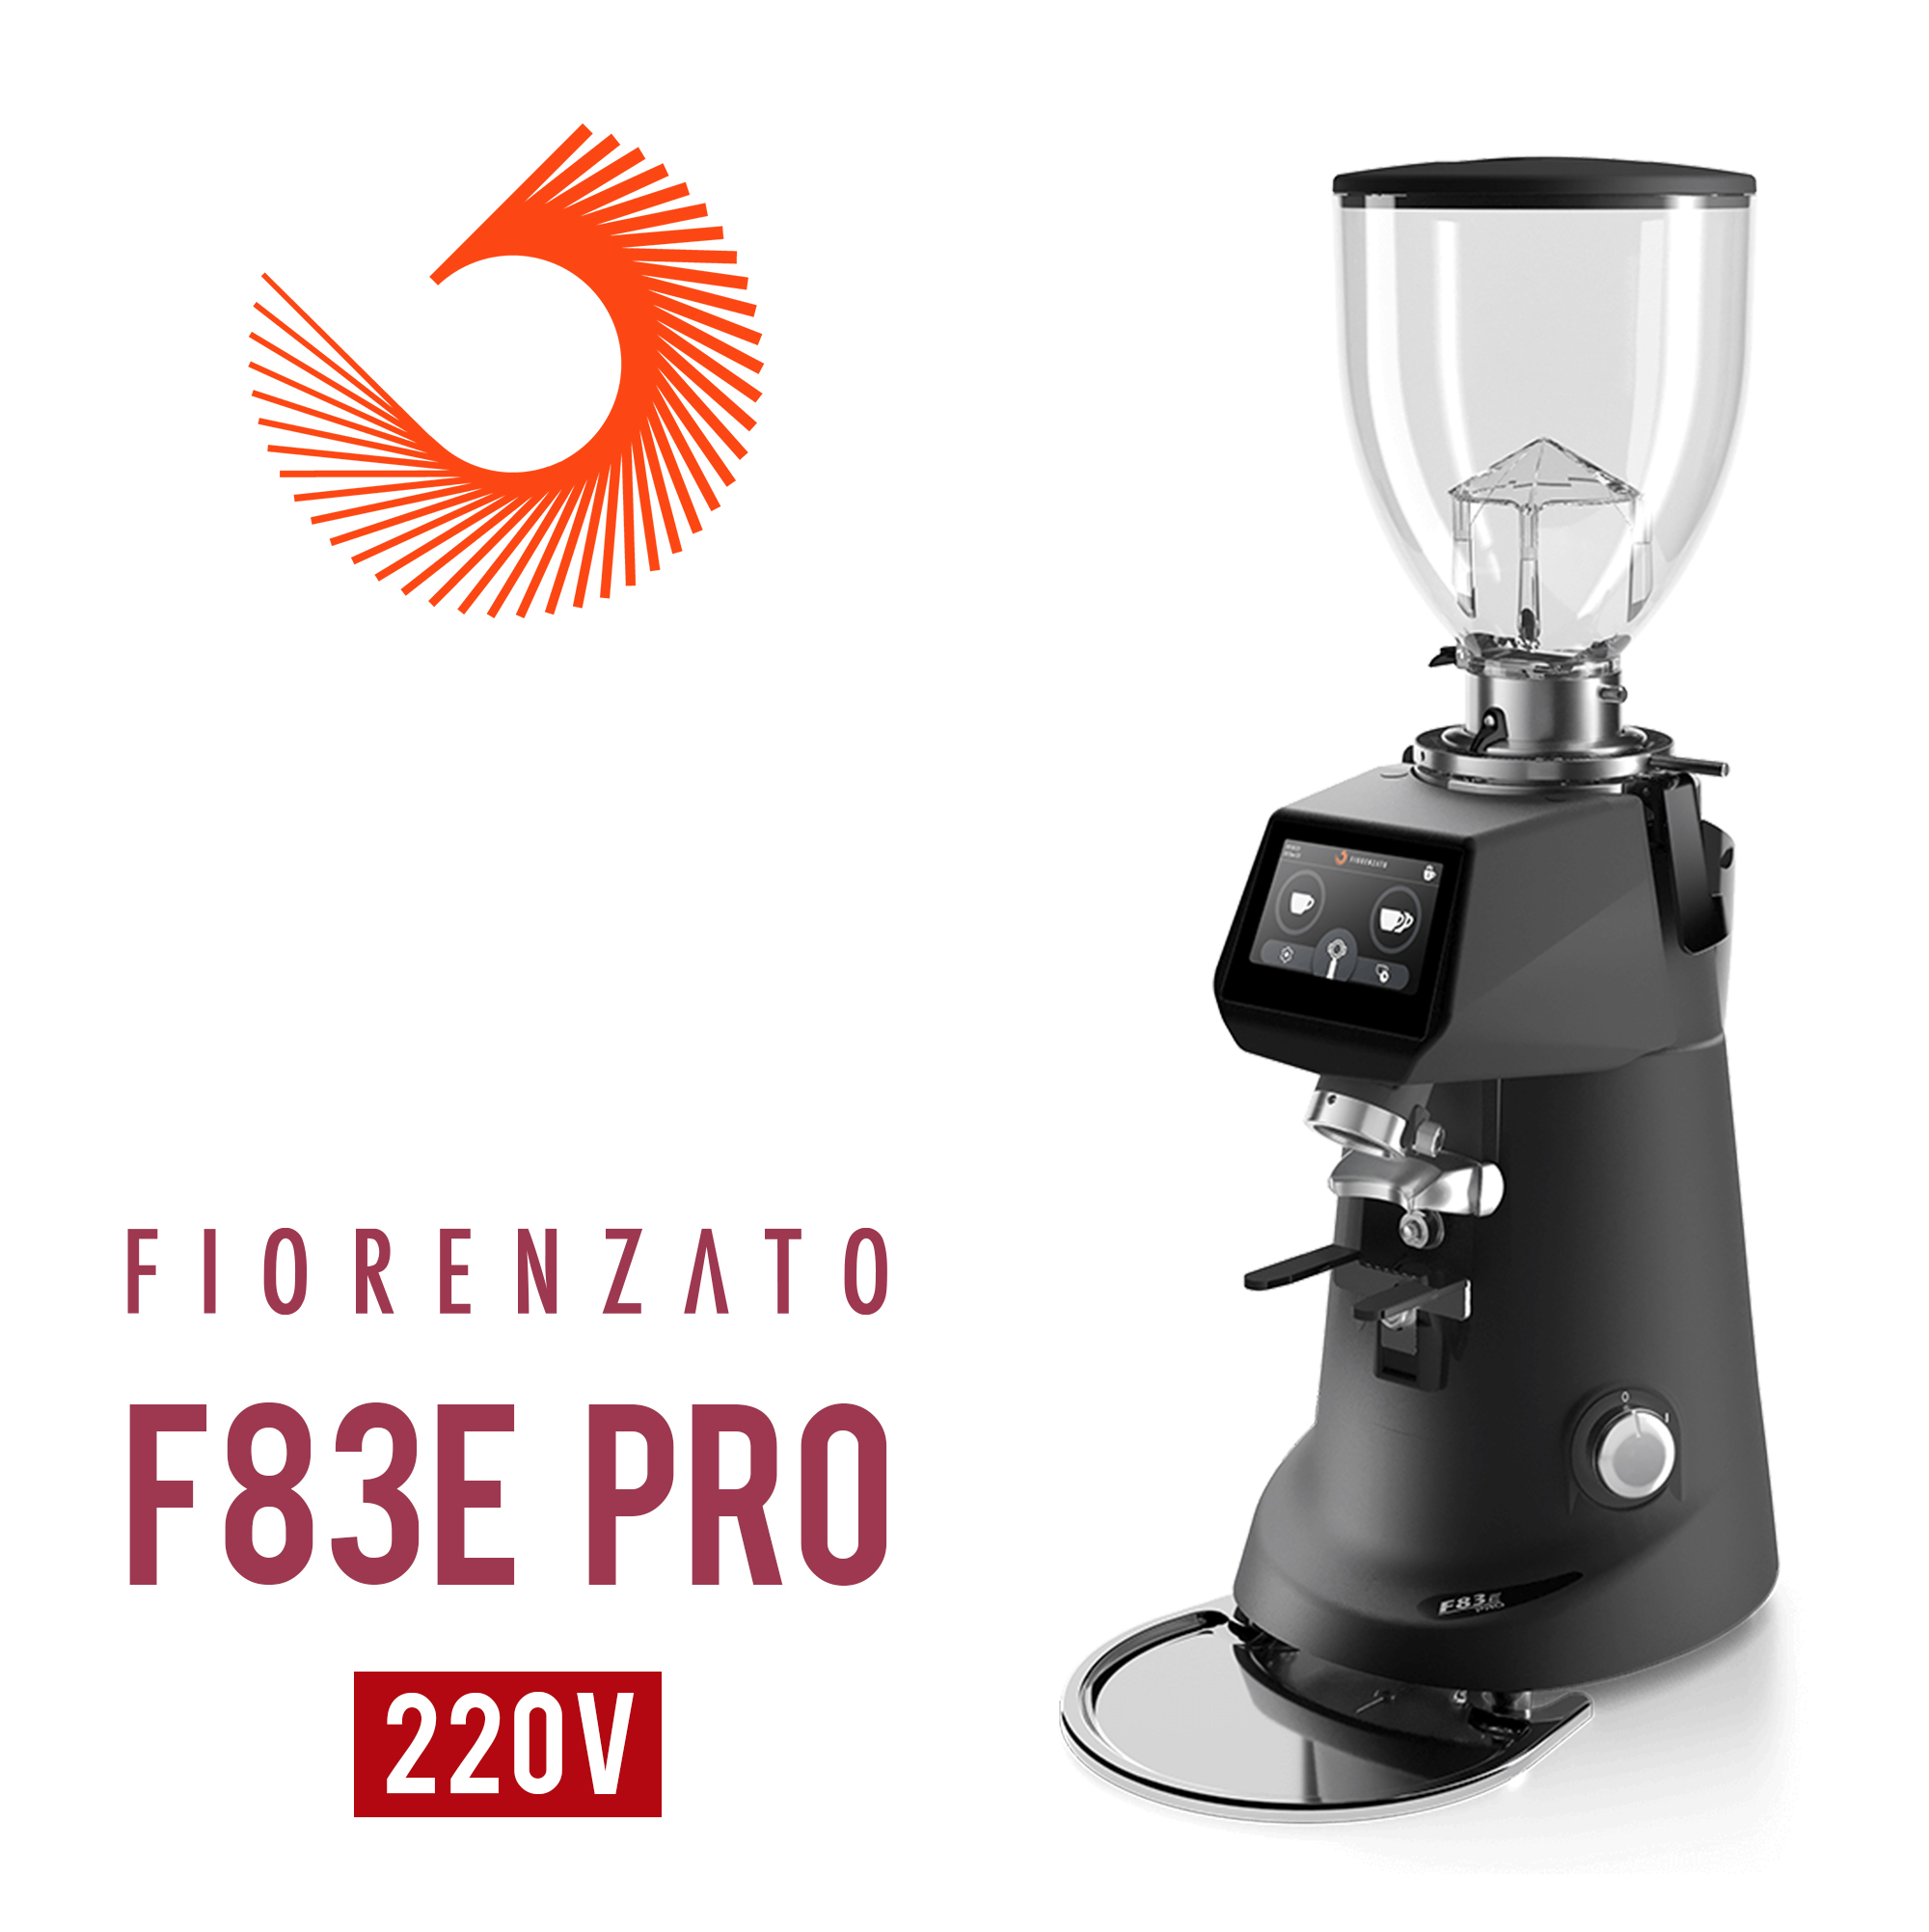 Fiorenzato F83E PRO 營業用磨豆機220V 霧黑  |營業級磨豆機